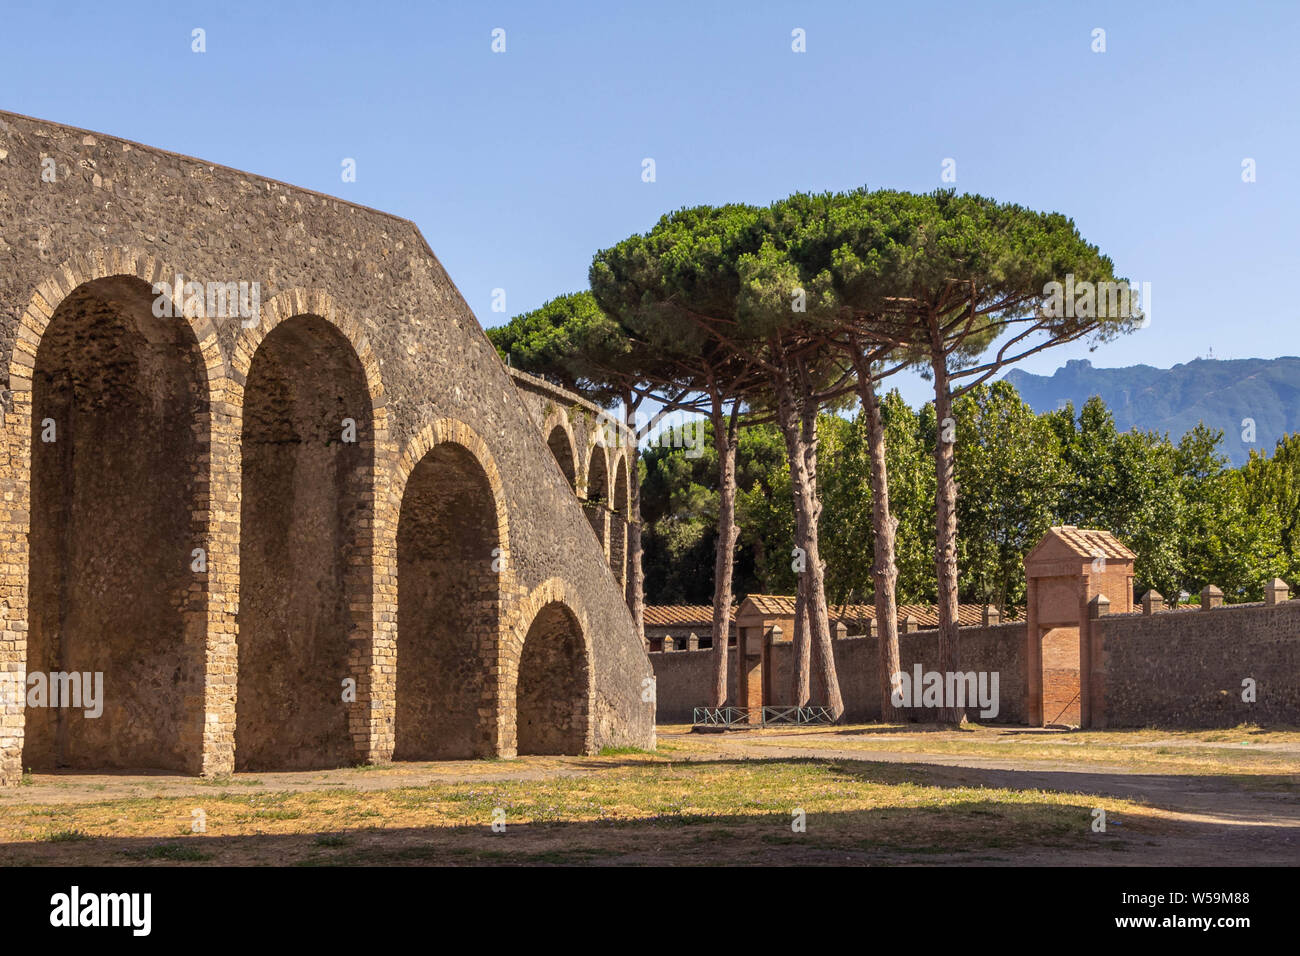 Ruinen von Pompeji: Überreste der antiken Stadt Pompeji vom Ausbruch des Vulkans Vesuv, Italien zerstört Stockfoto